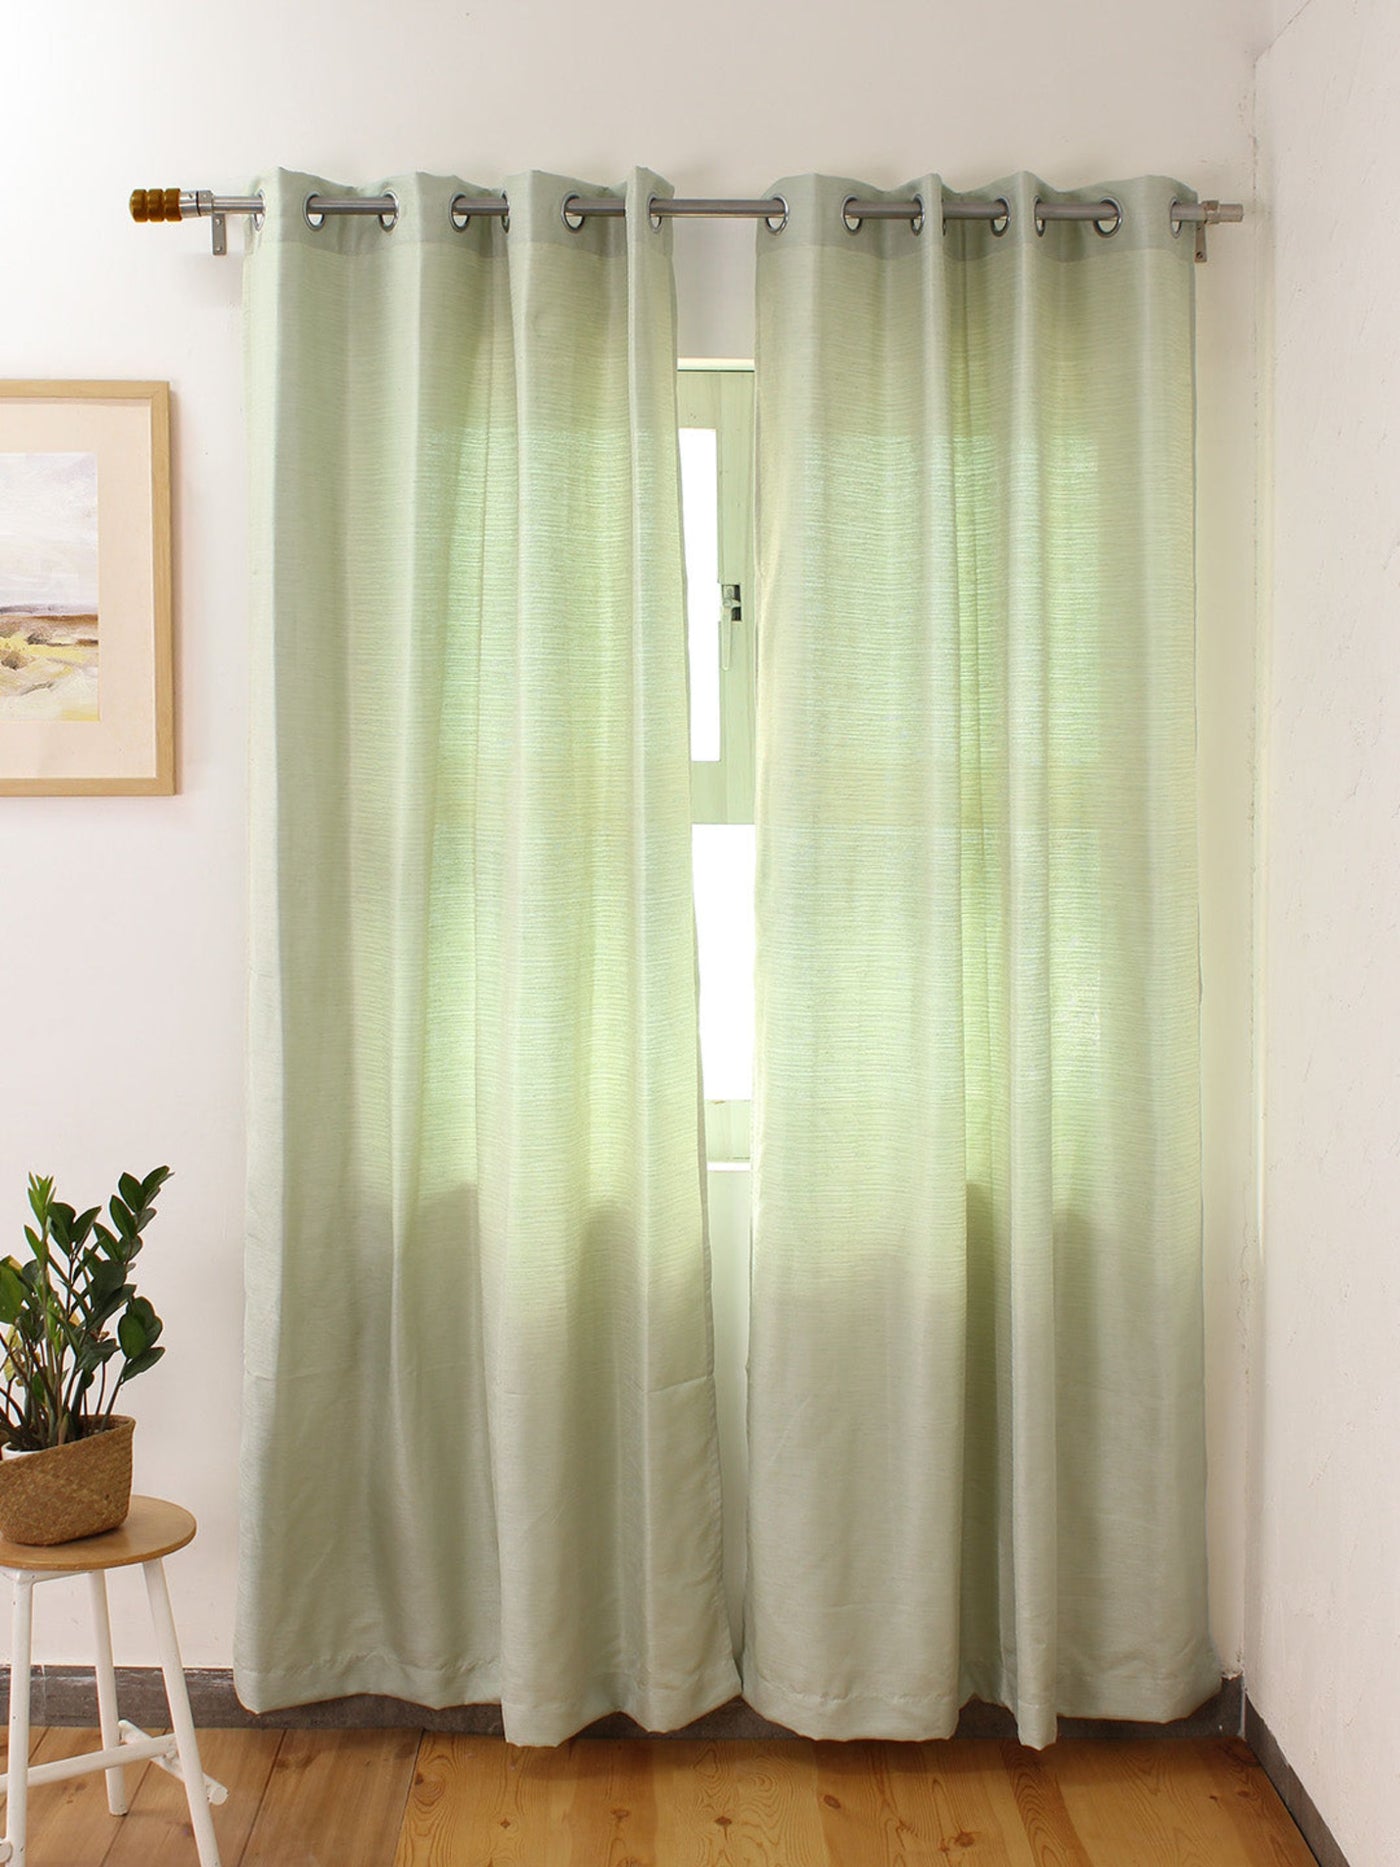 Chambal Curtain (Green)